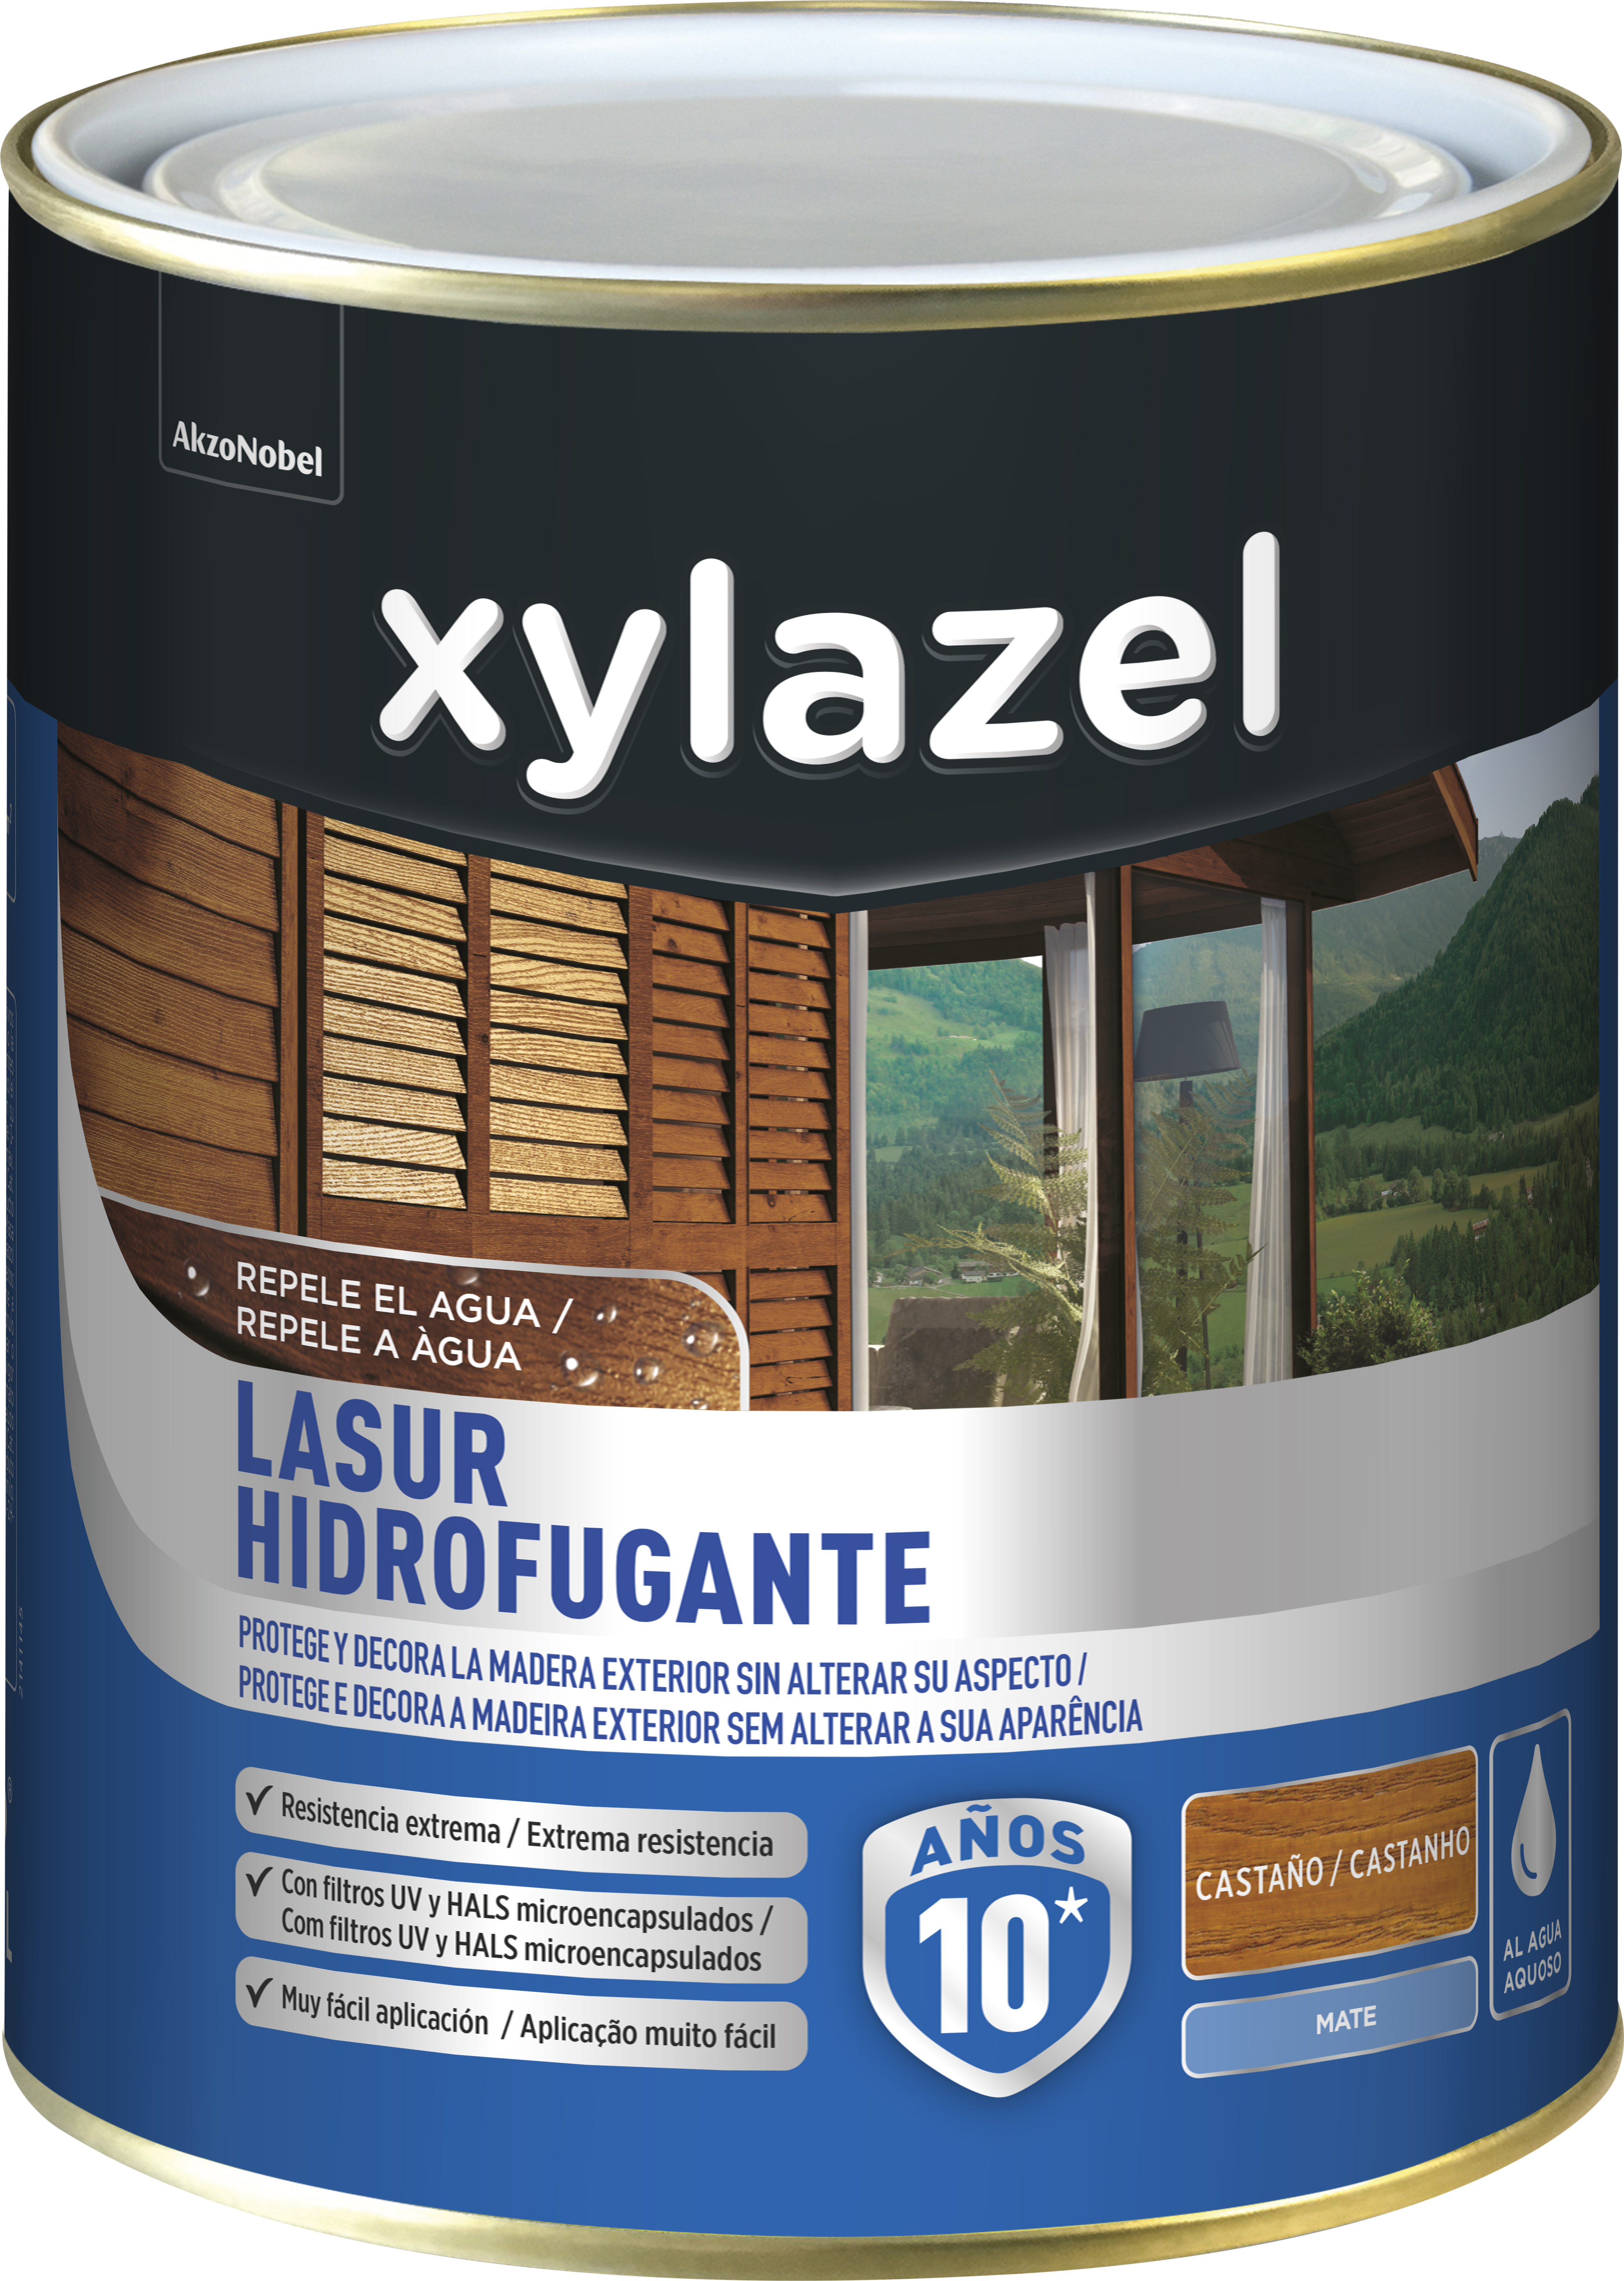 Protector de madera hidrofugante mate xylazel 2.5 l castaño